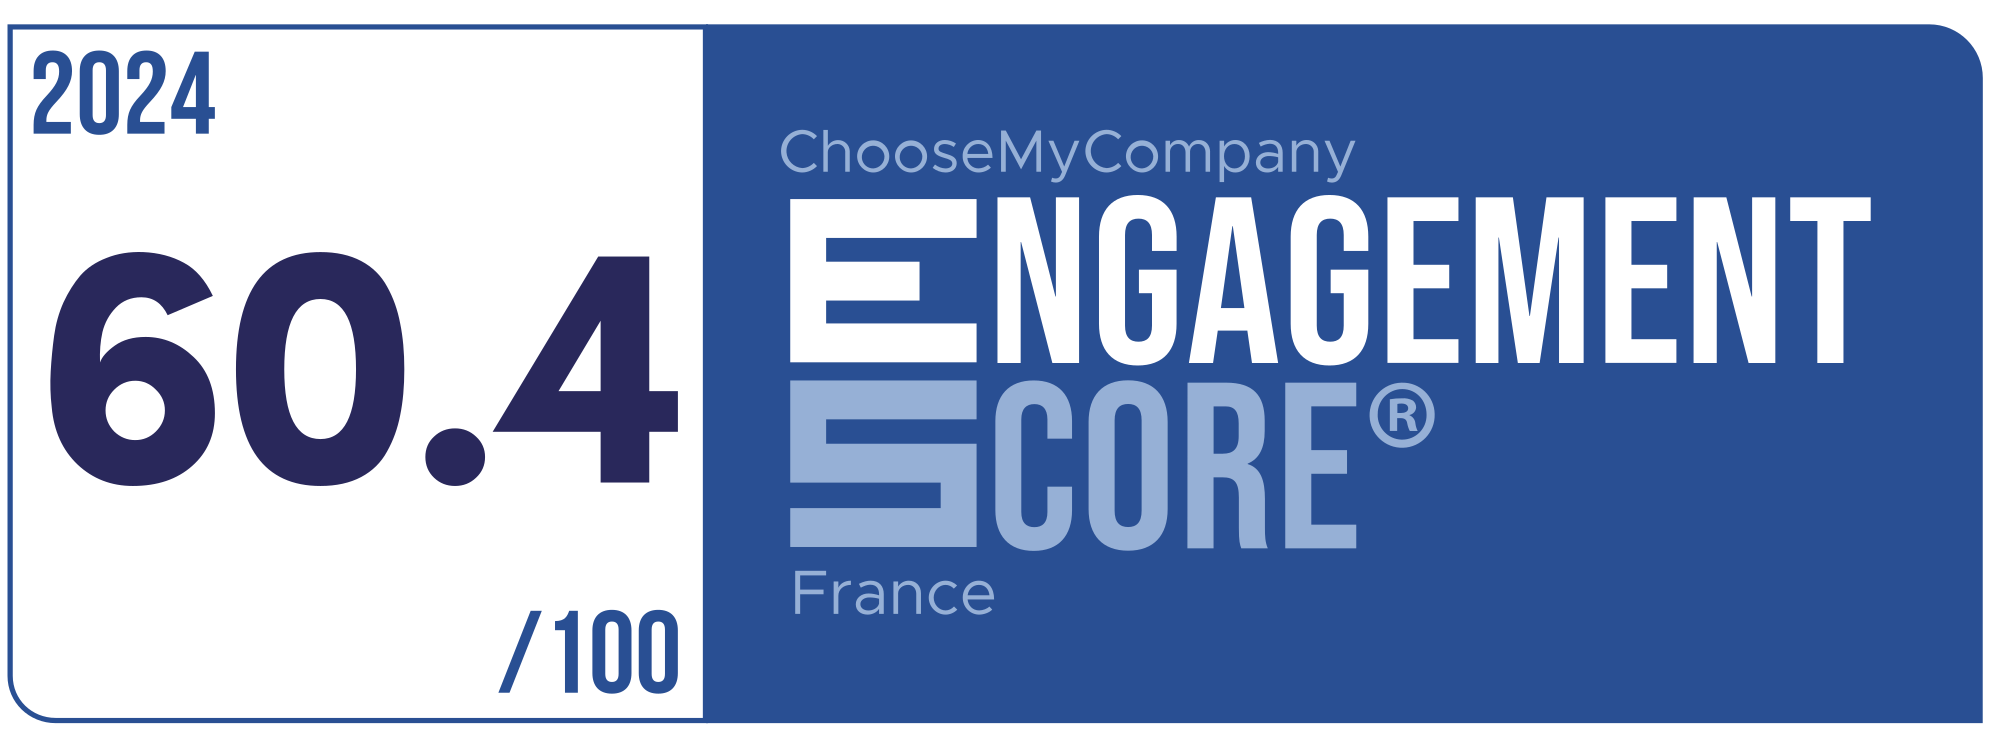 Label Engagement Score 2024 France